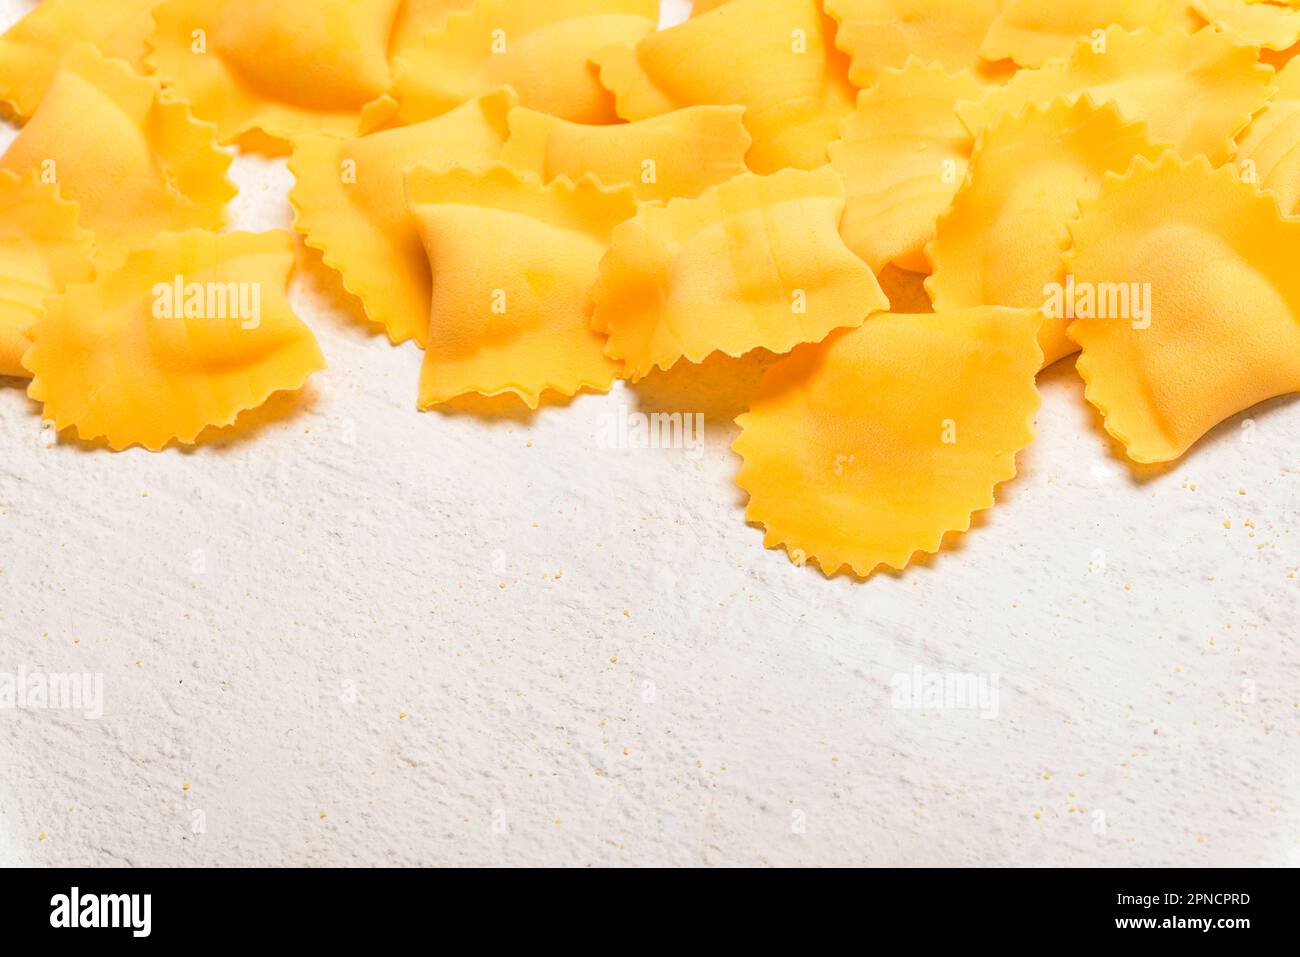 Handmade Tortelli fresh pasta, Italy Stock Photo